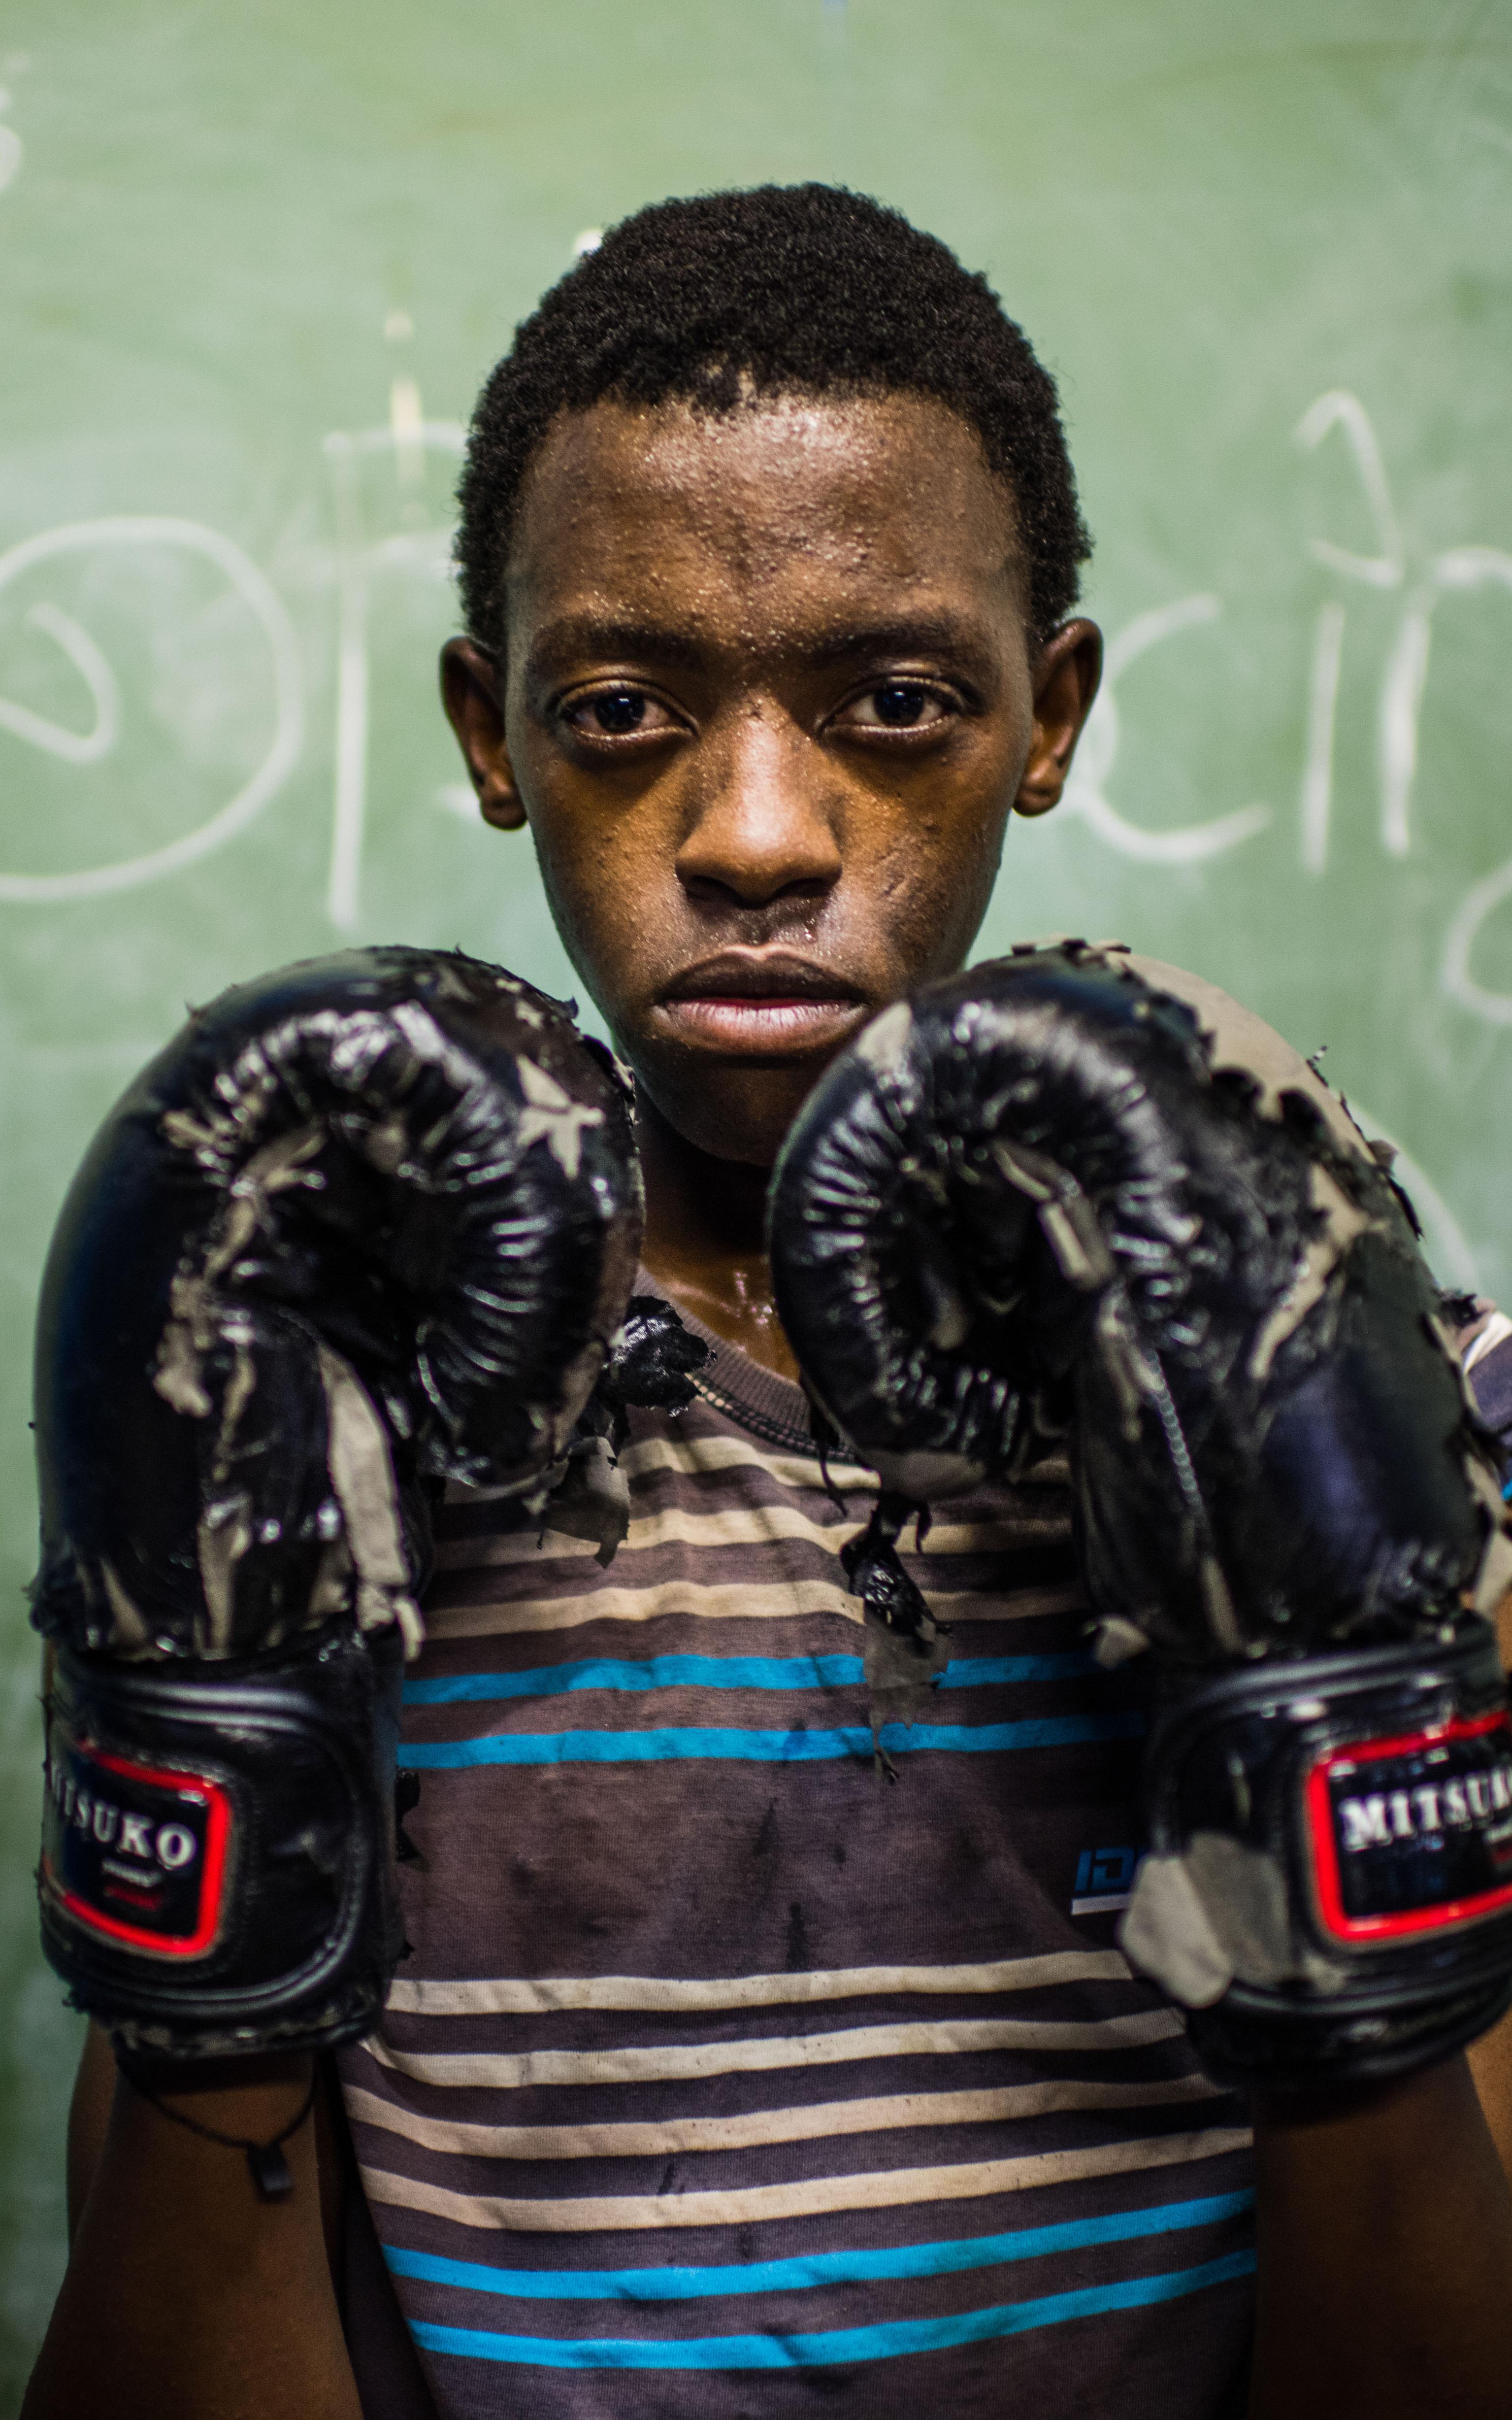 Kid in boxing gear.